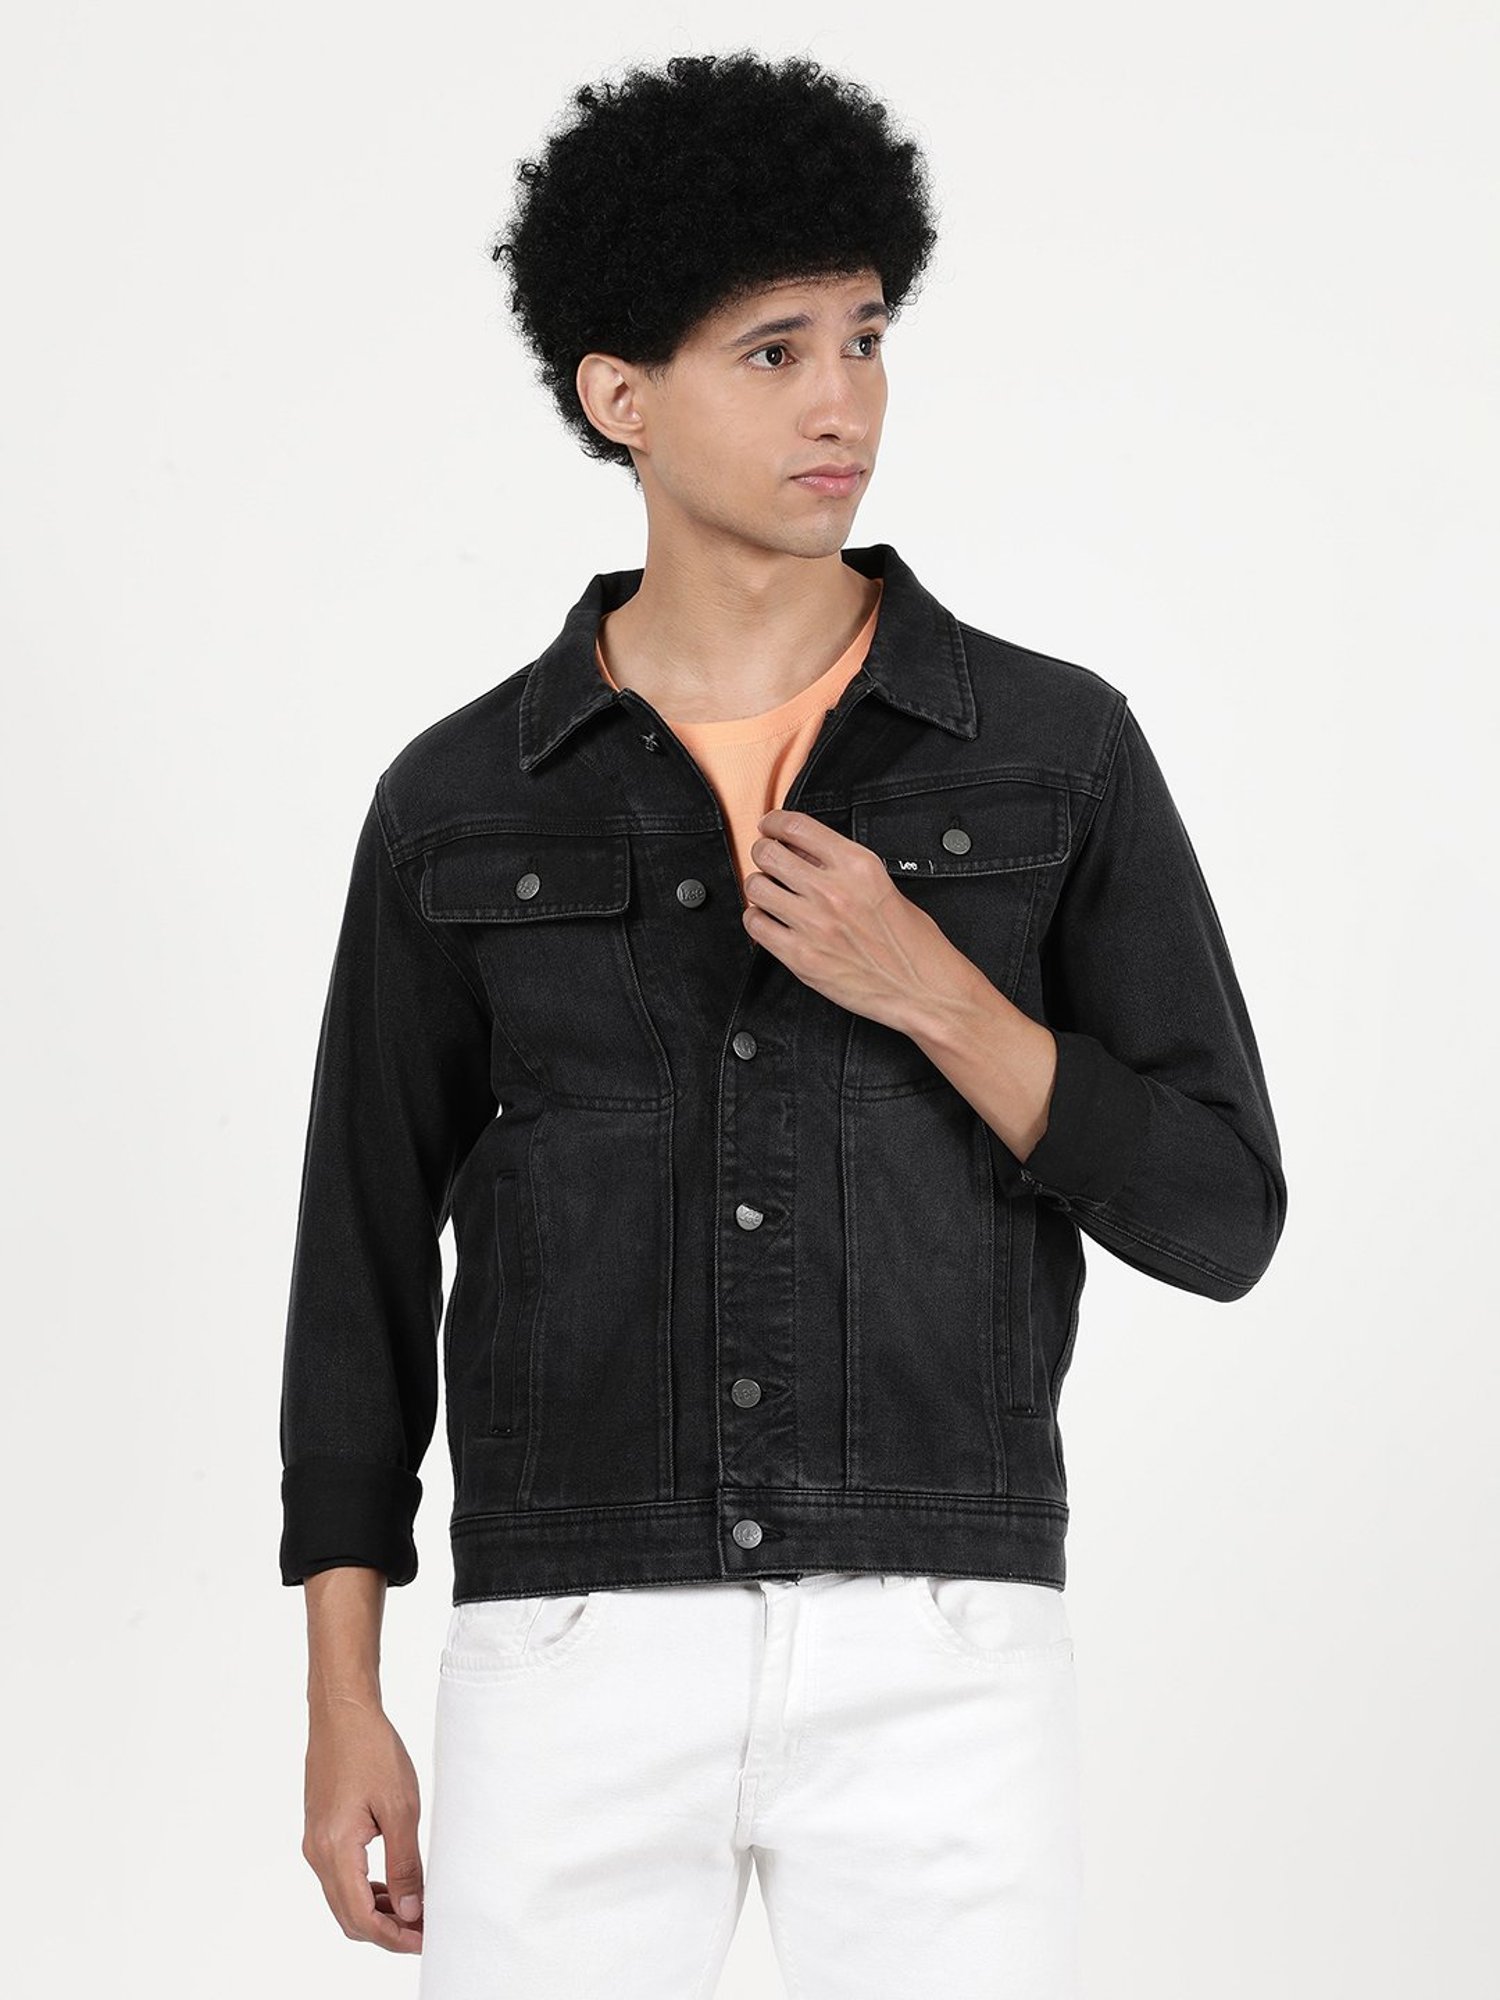 Buy Men Black Textured Casual Jacket Online - 691151 | Van Heusen